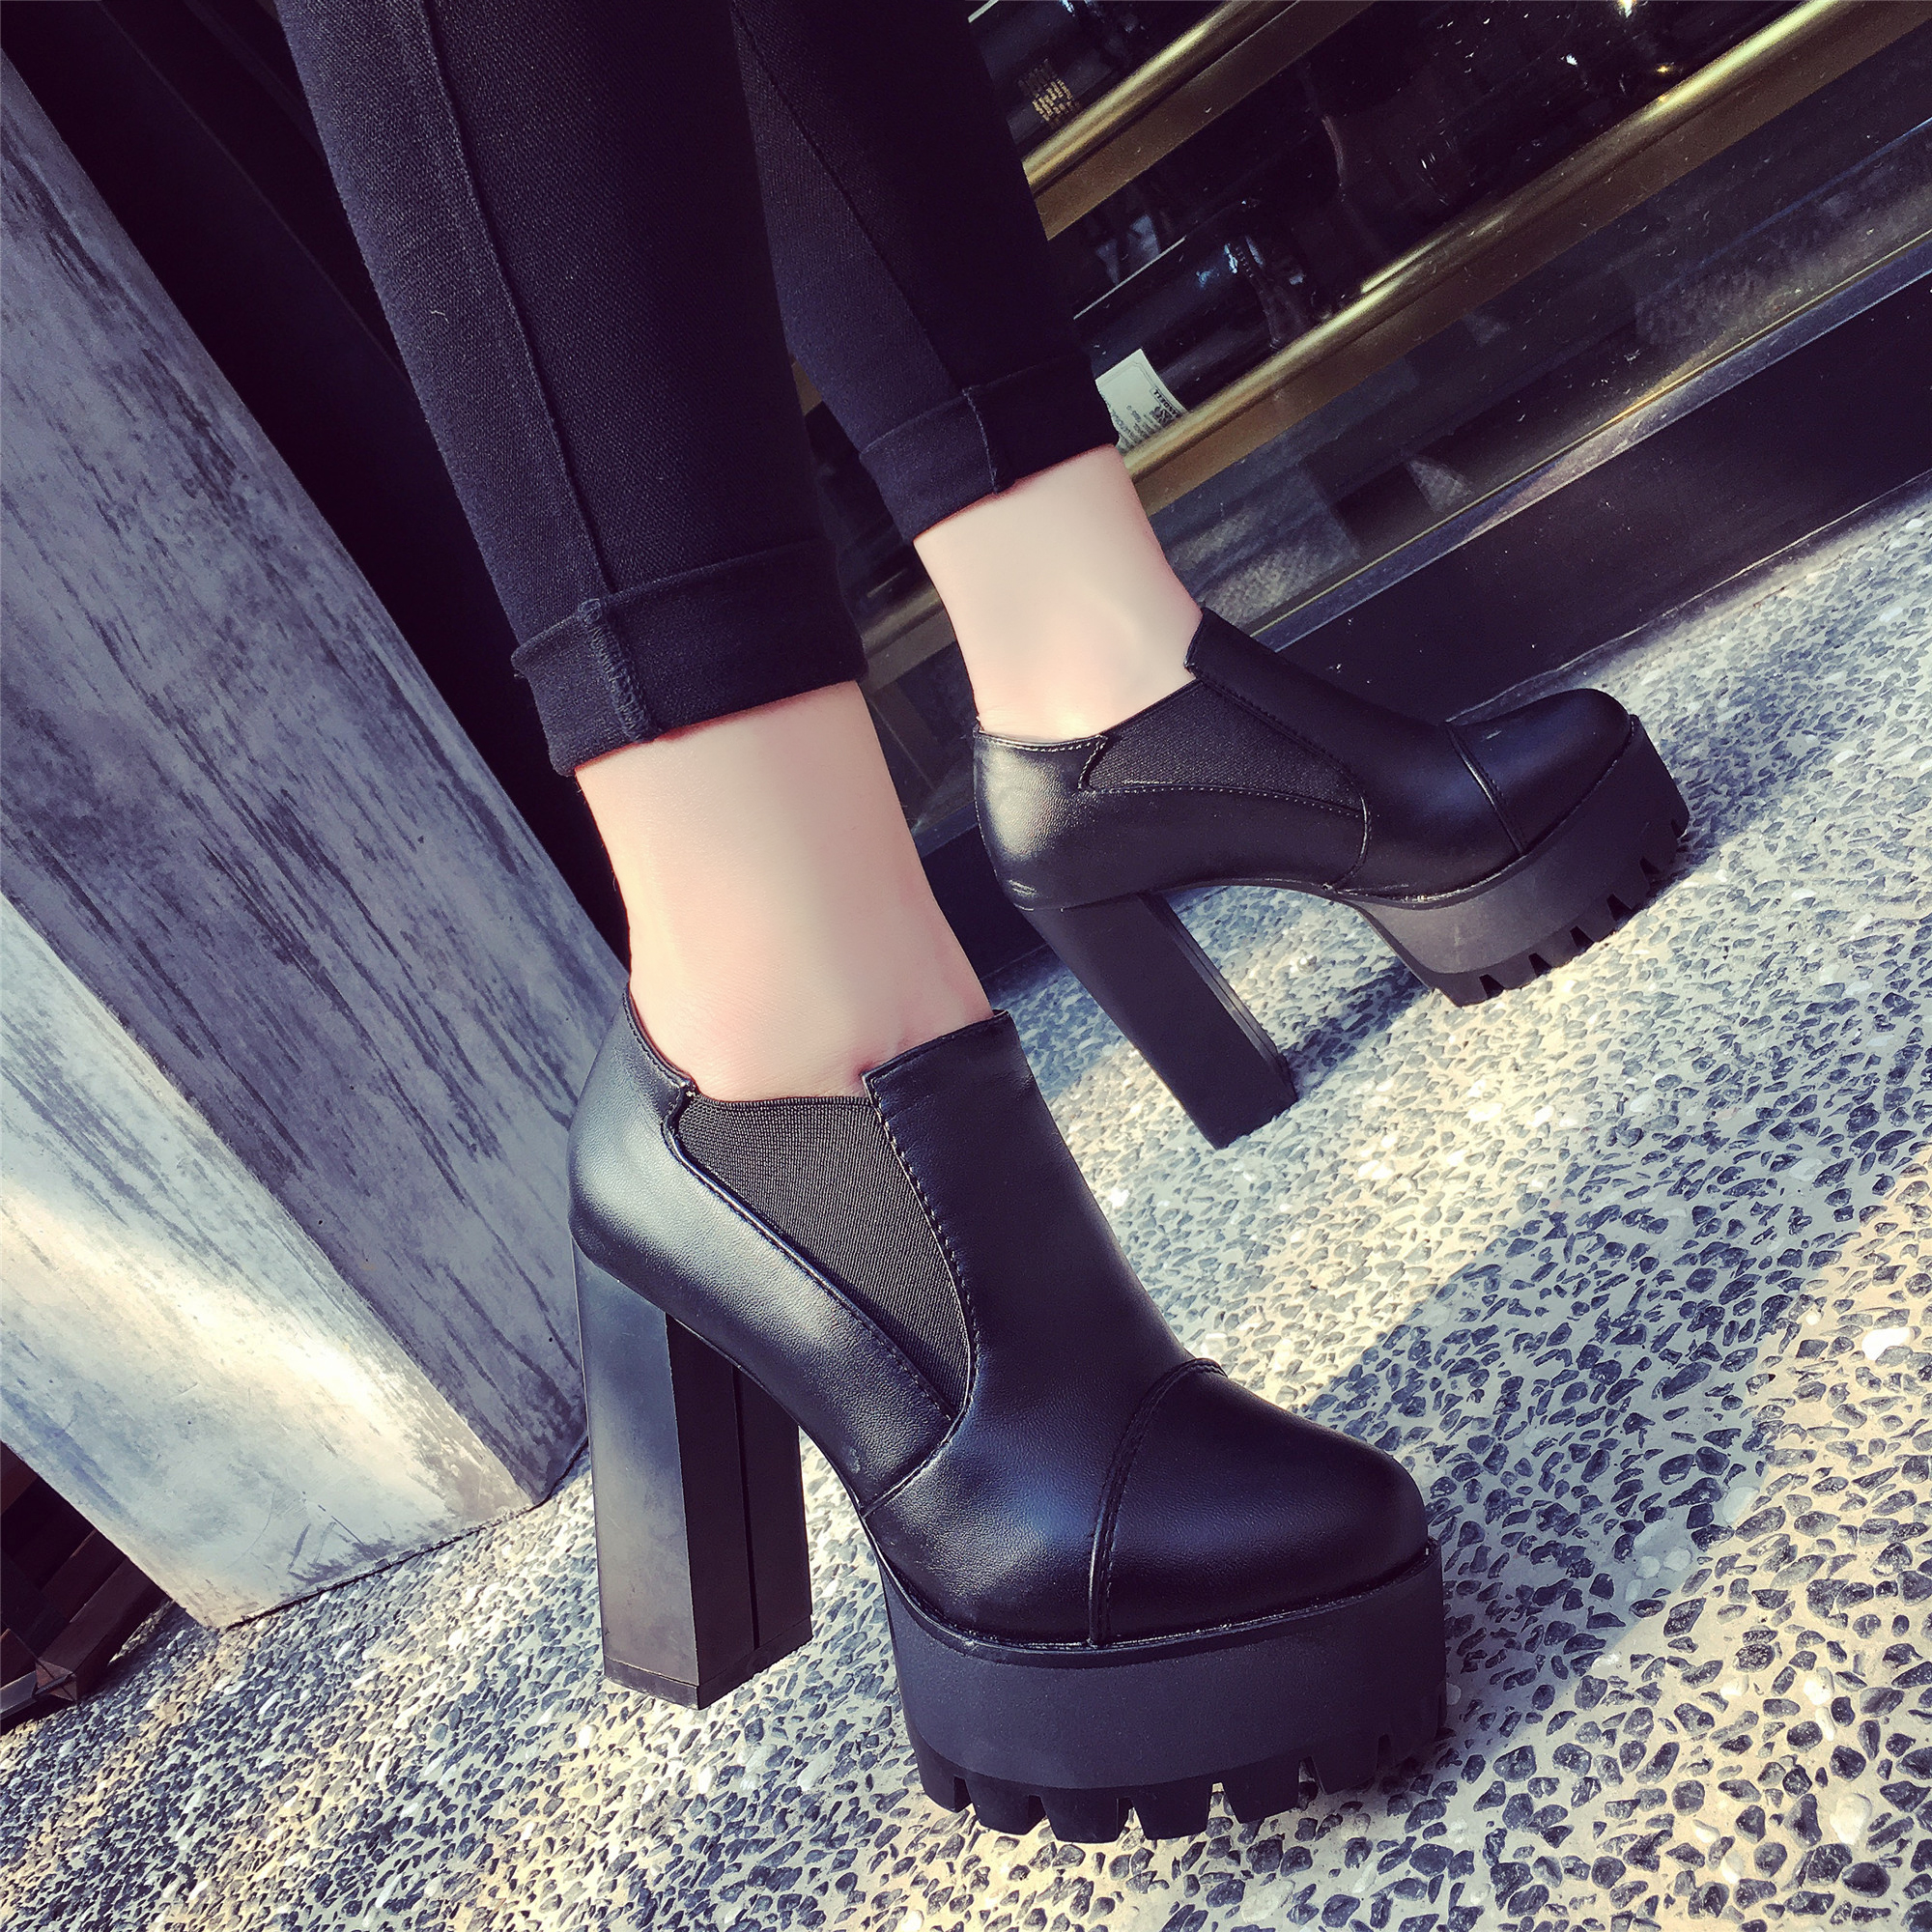 都市魅力黑色女士高跟鞋 2016巴黎走秀款鞋子 Christian Louboutin新款女鞋 - 七七奢侈品